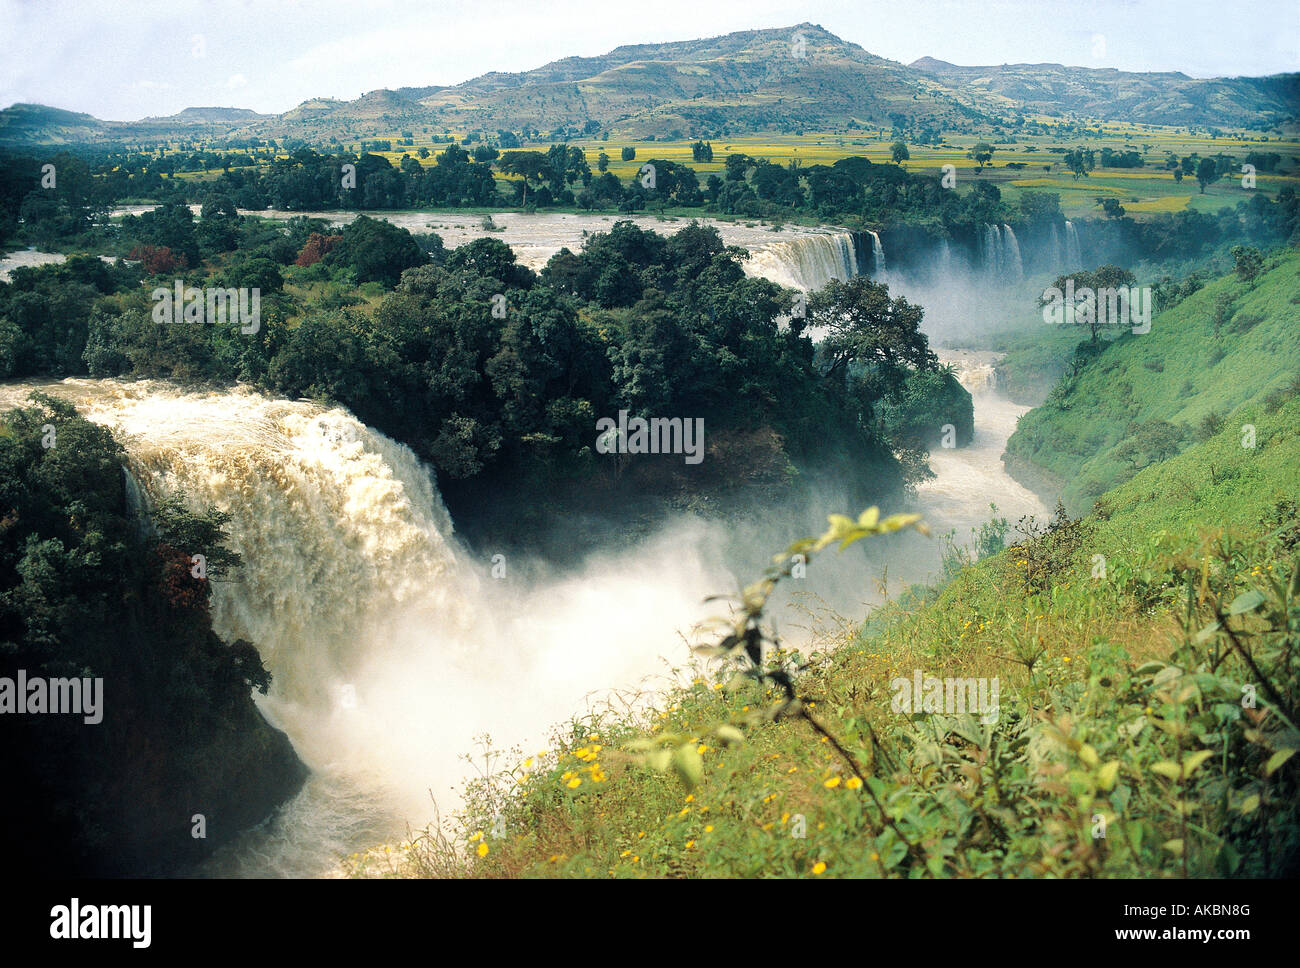 Chutes du Nil bleu appelé Tis Abay ou Tis Isat ou chutes de Tissisat Bahr Dar Ethiopie Afrique Banque D'Images